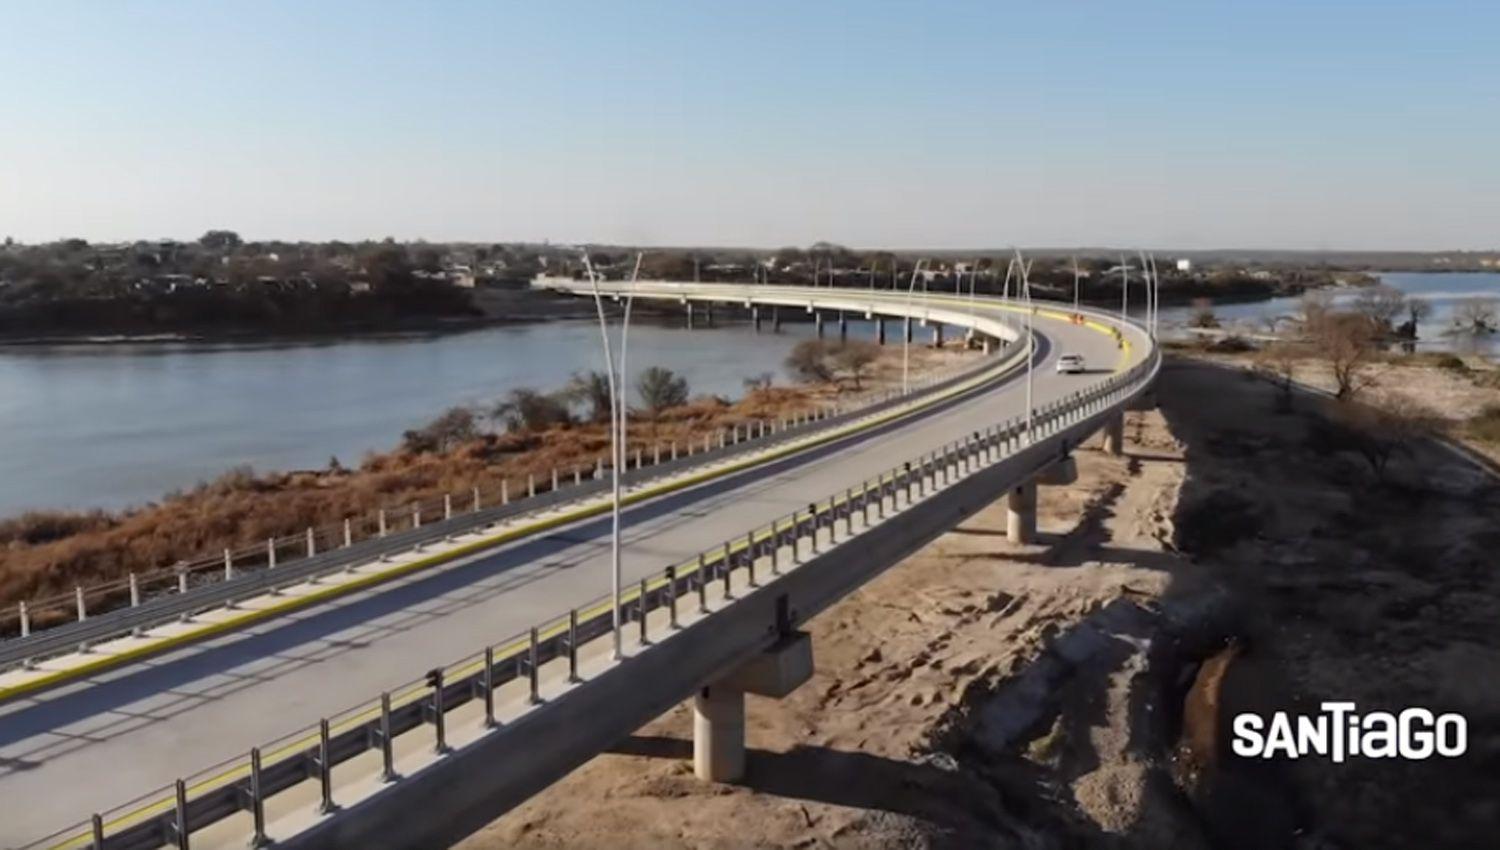 VIDEO  Miraacute el nuevo puente de Las Termas de Riacuteo Hondo